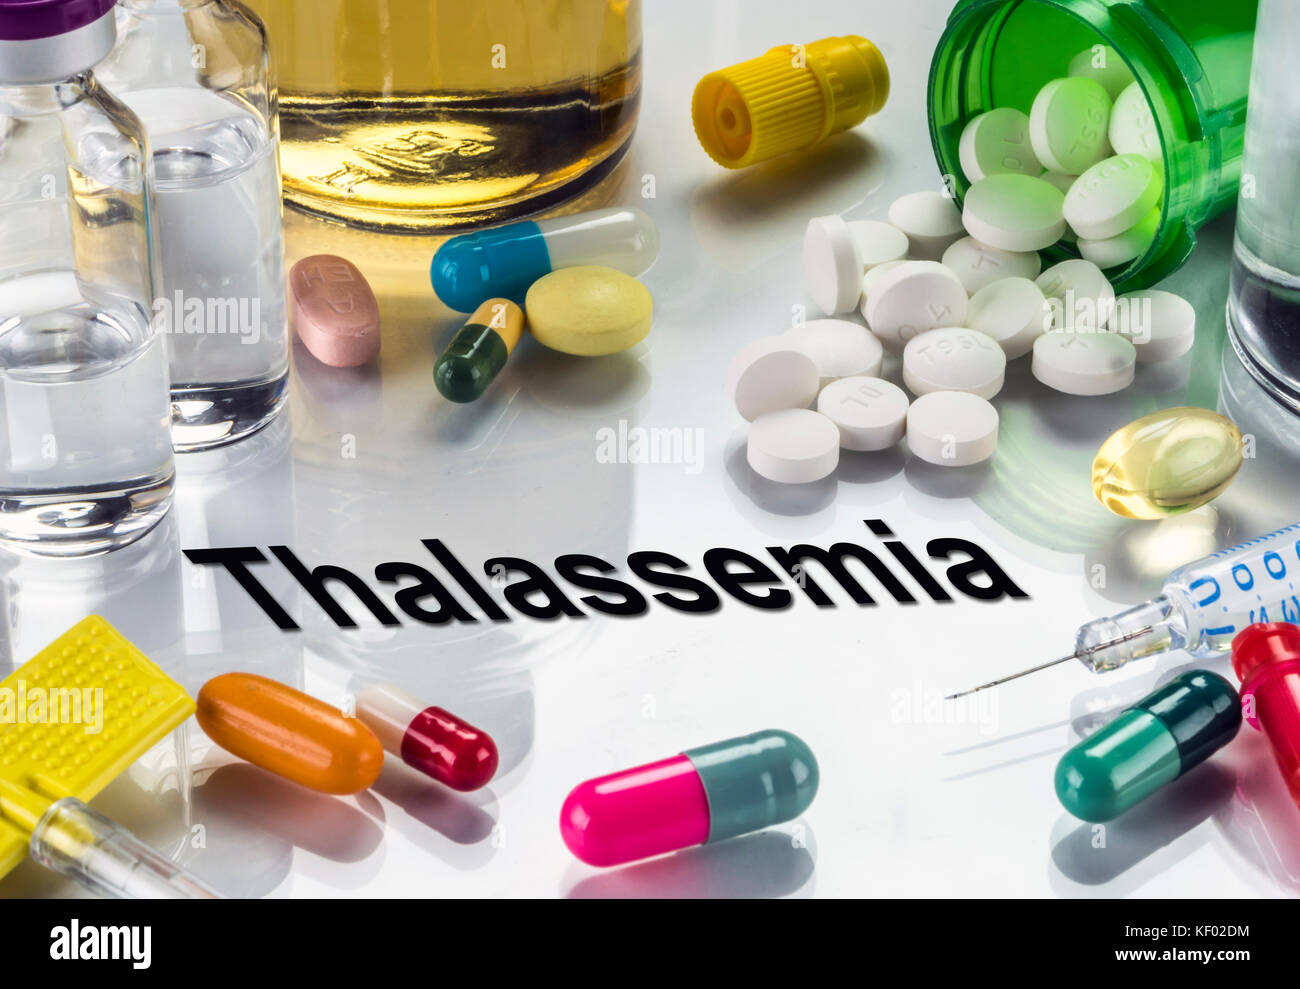 La talassemia, medicinali come concetto di trattamento ordinario, immagine concettuale Foto Stock